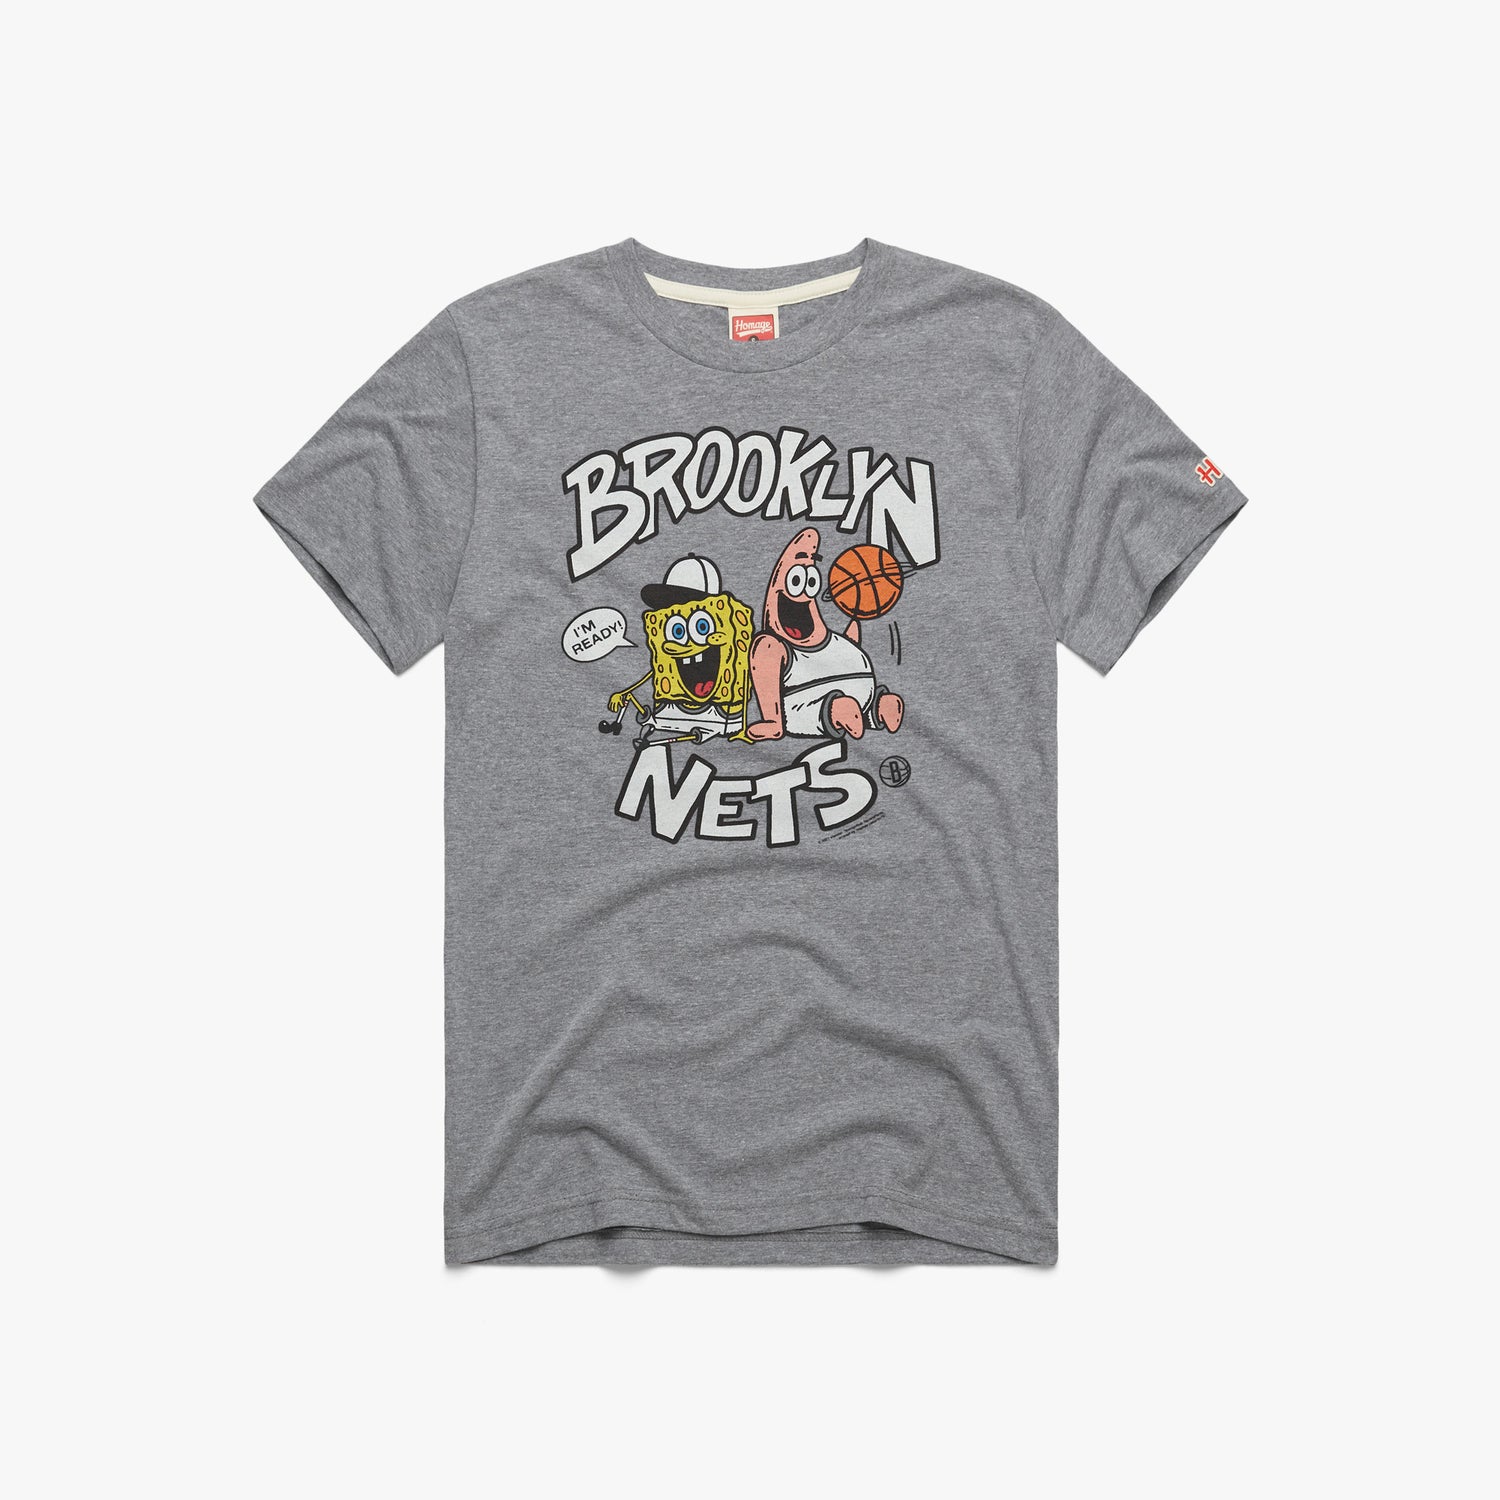 Brooklyn Nets on X: Home sweet home  / X